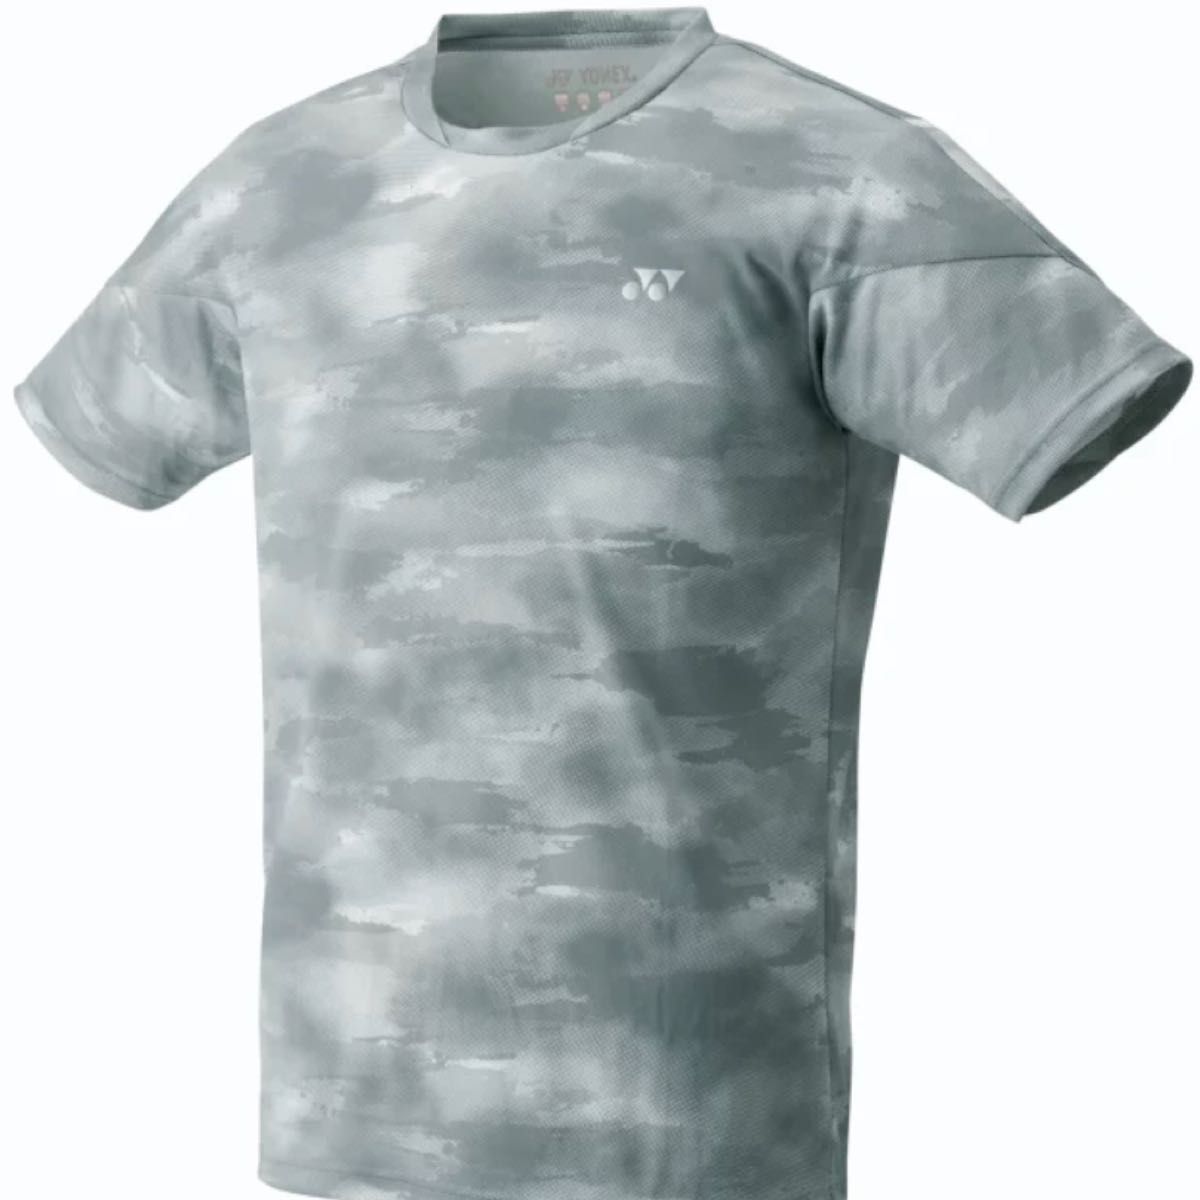 ヨネックス YONEX バドミントン ゲームシャツ ユニフォーム ウェア Lサイズ Tシャツ 